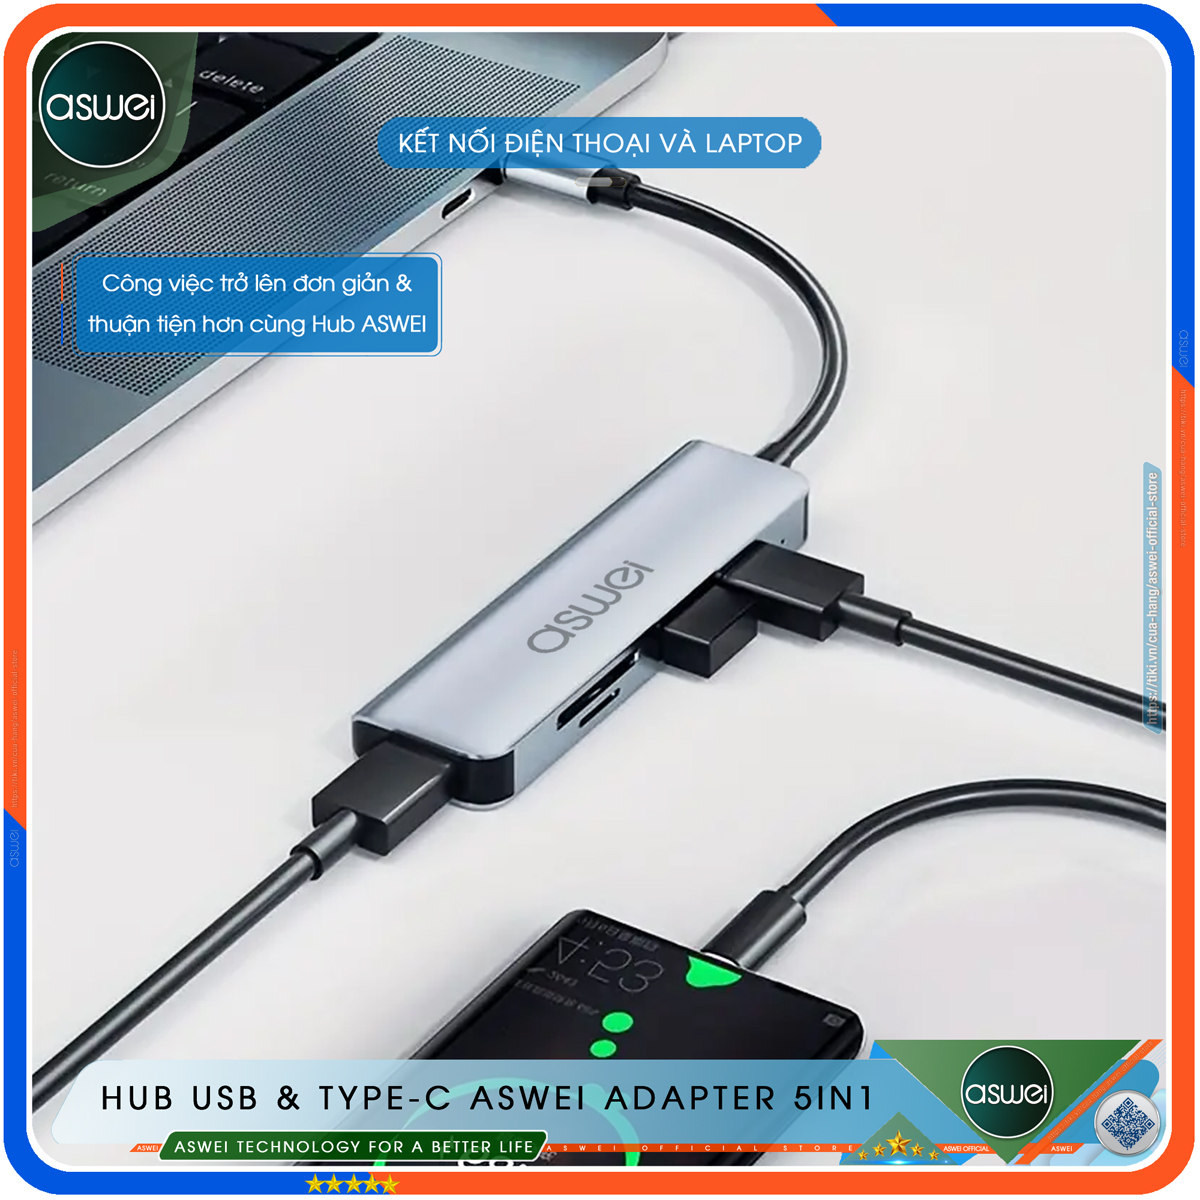 Hub Type C Và Hub USB 3.0 ASWEI Adapter 5in1 - Cổng Chia USB Mở Rộng Kết Nối Tốc Độ Cao Dành Cho Macbook, Laptop, PC - Hub Chuyển Đổi USB Type-C Hỗ Trợ Sạc Pin, Kết Nối Đa Năng ổ Cứng, Bàn Phím, Chuột, Máy In, Ổ Chia USB - Hàng Chính Hãng